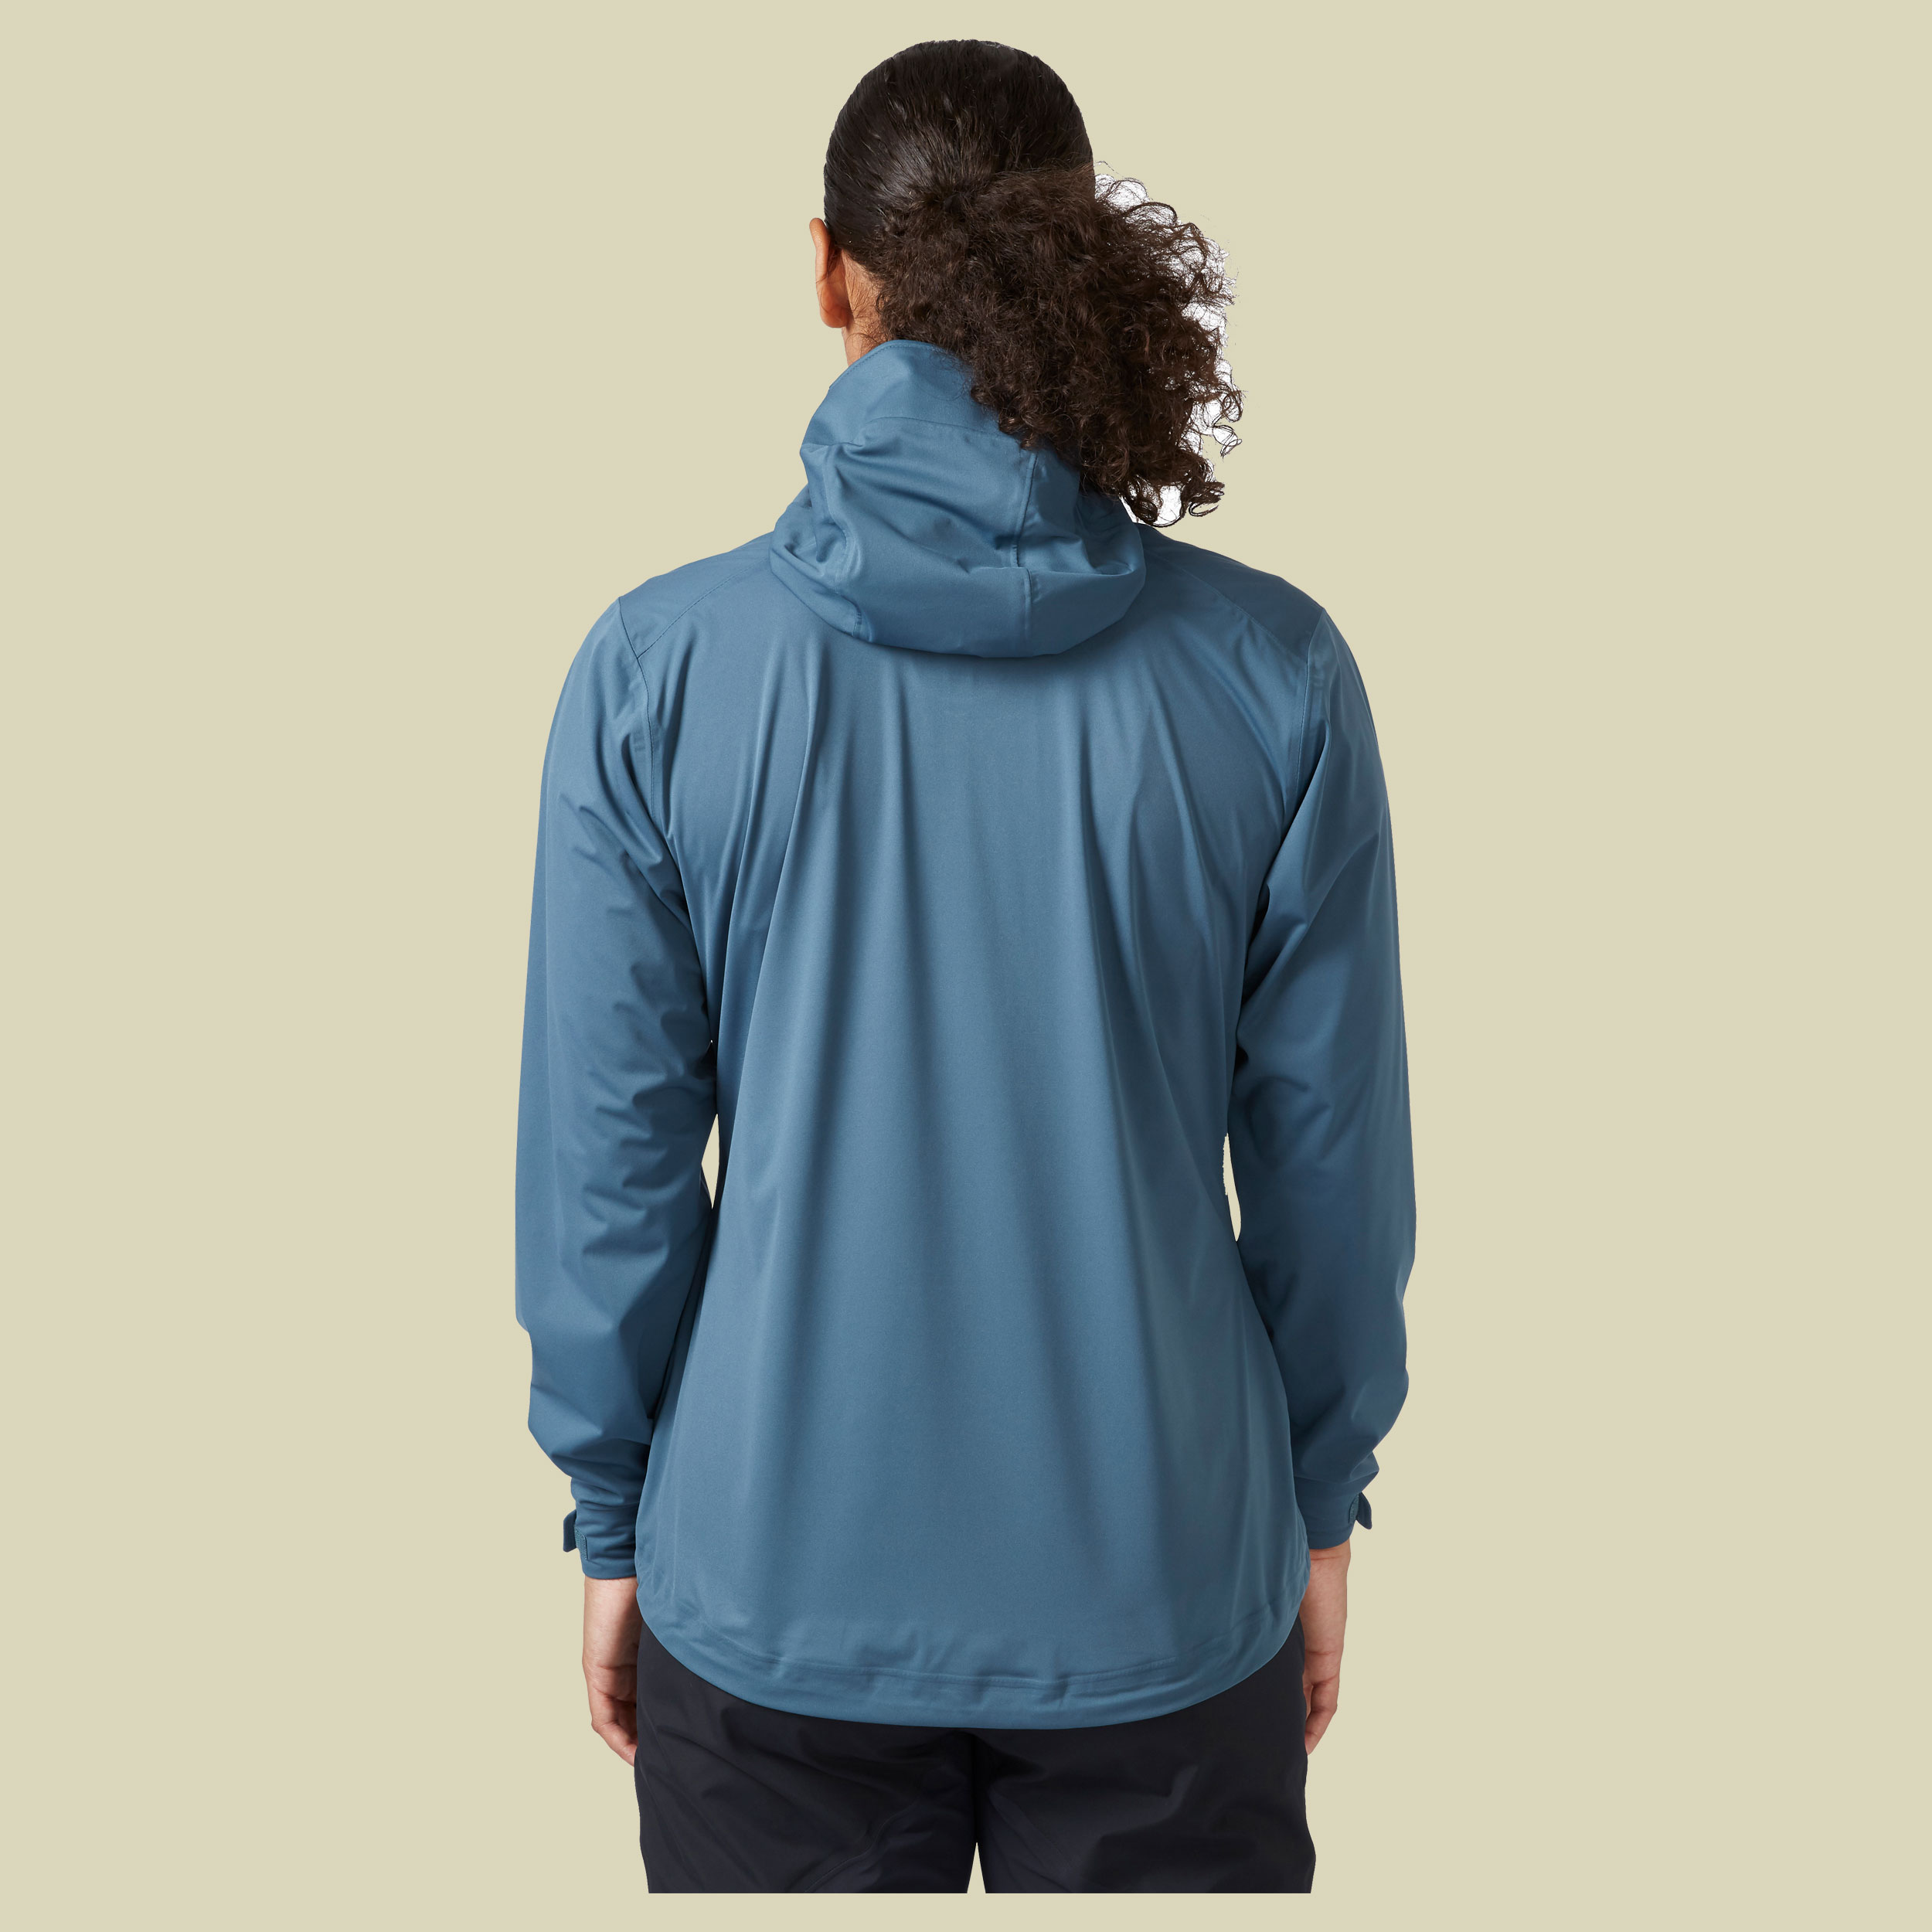 Kinetic 2.0 Jacket Women Größe XL (size 16) Farbe orion blue